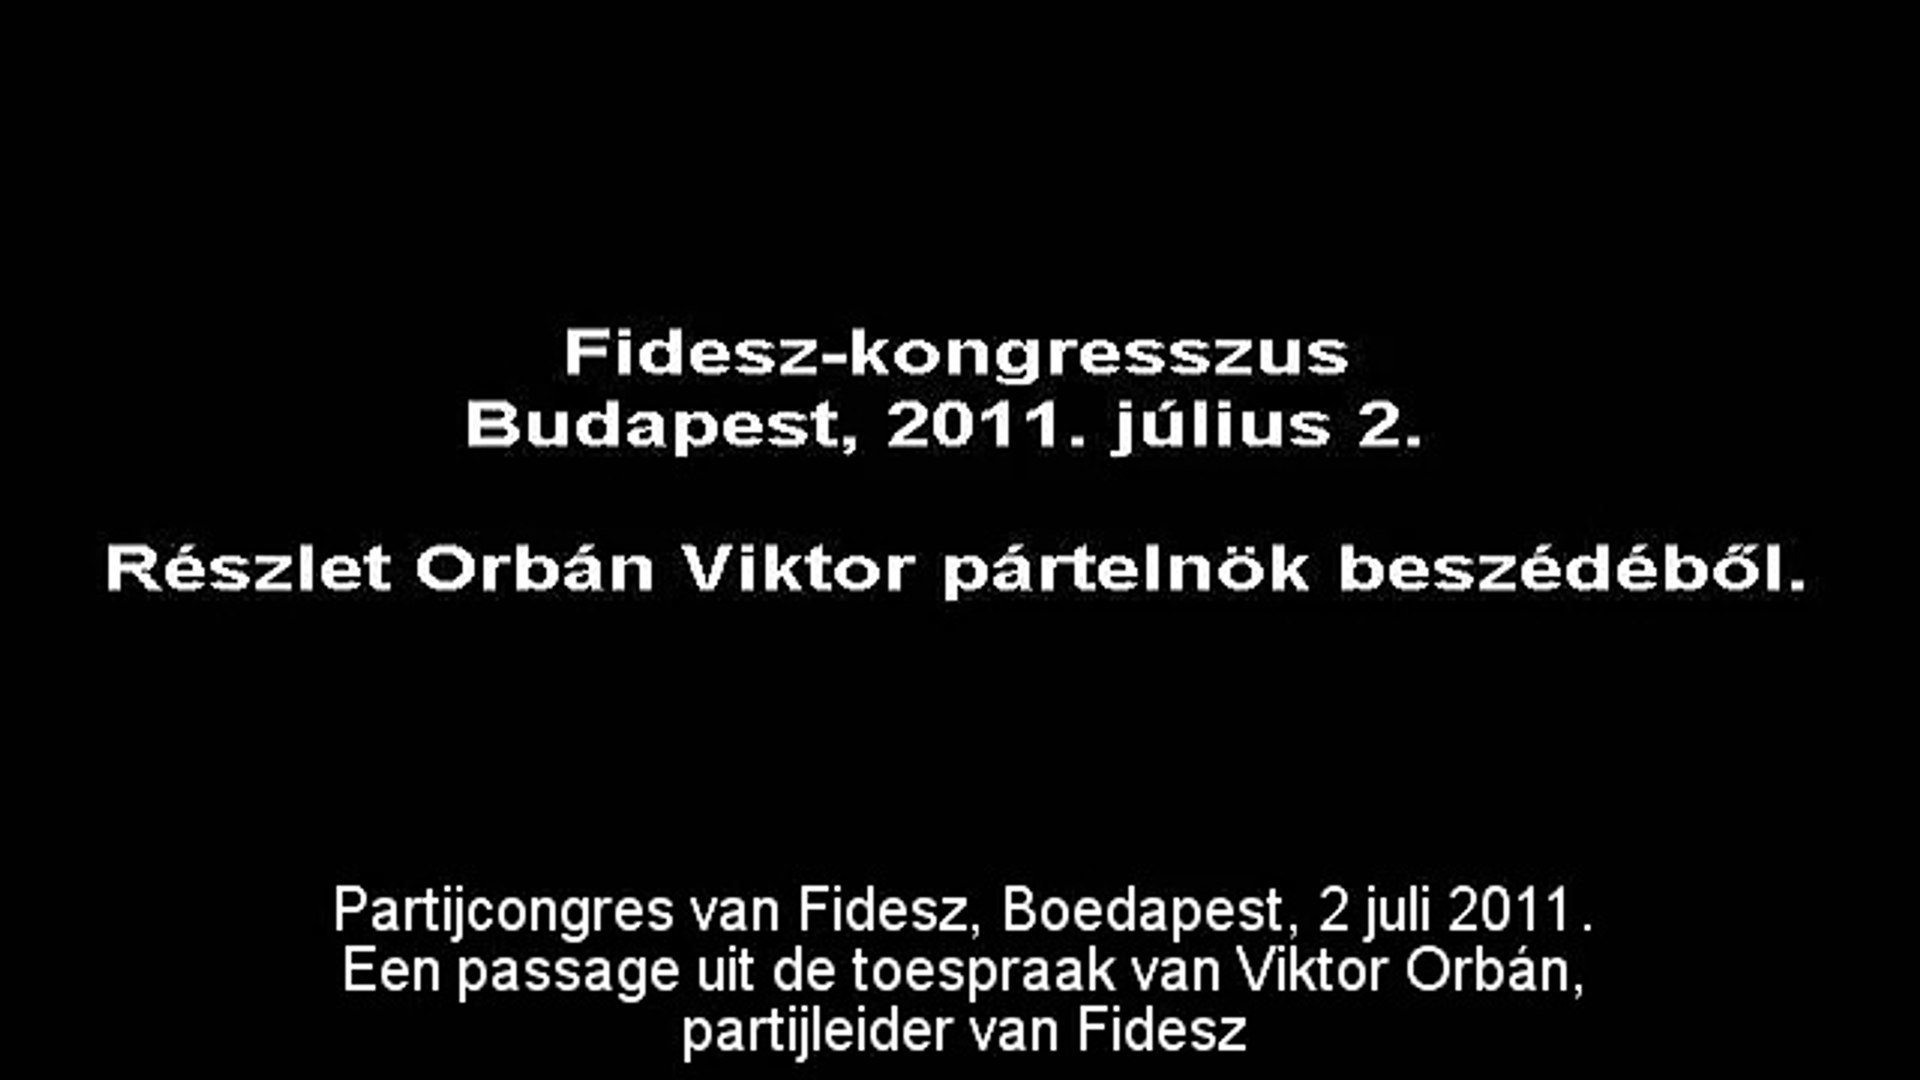 Viktor Orbán, een echte Europeaan